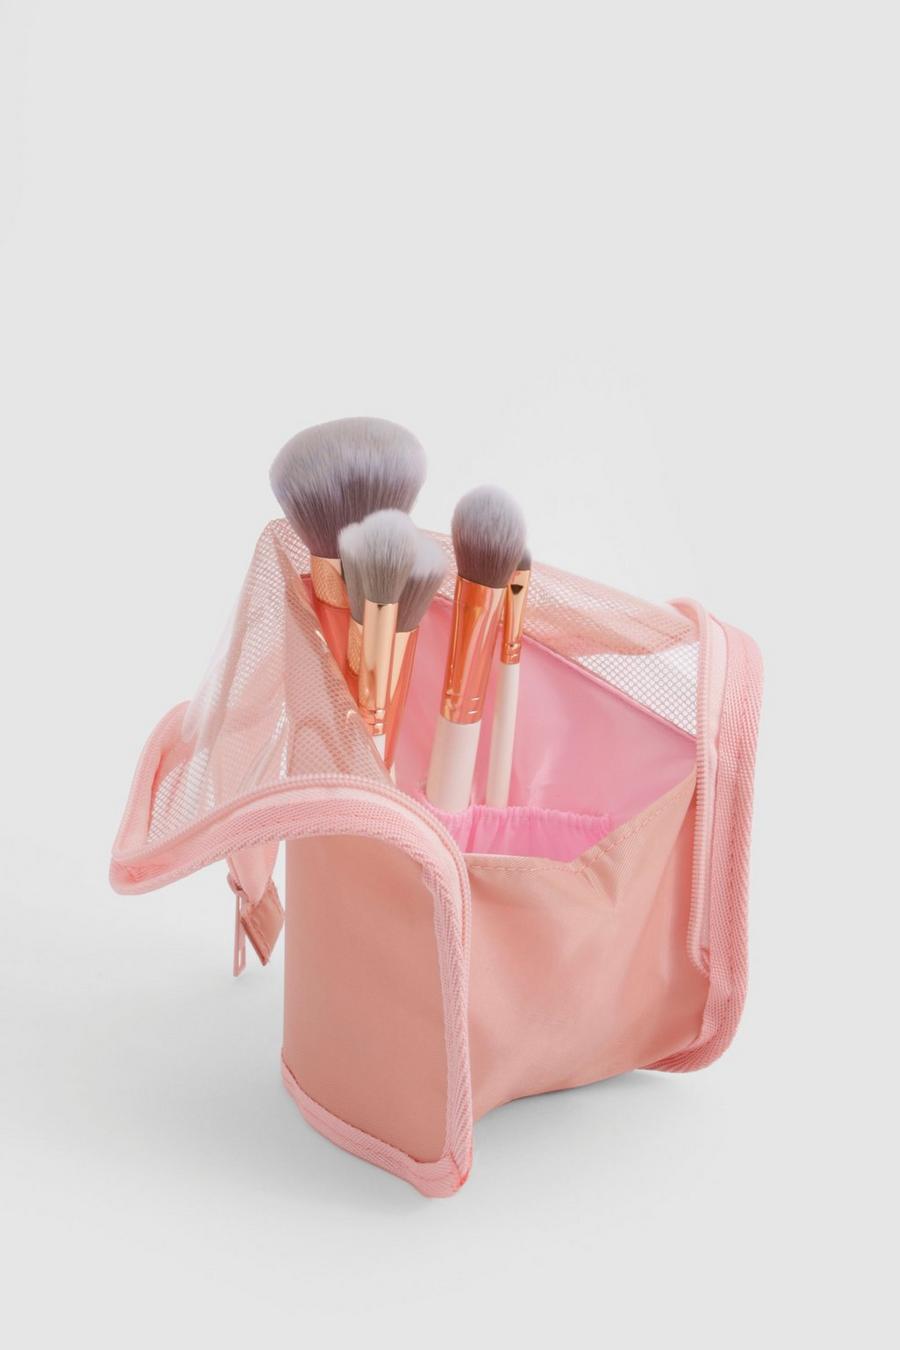 Pink Makeup Brush Travel Organizer